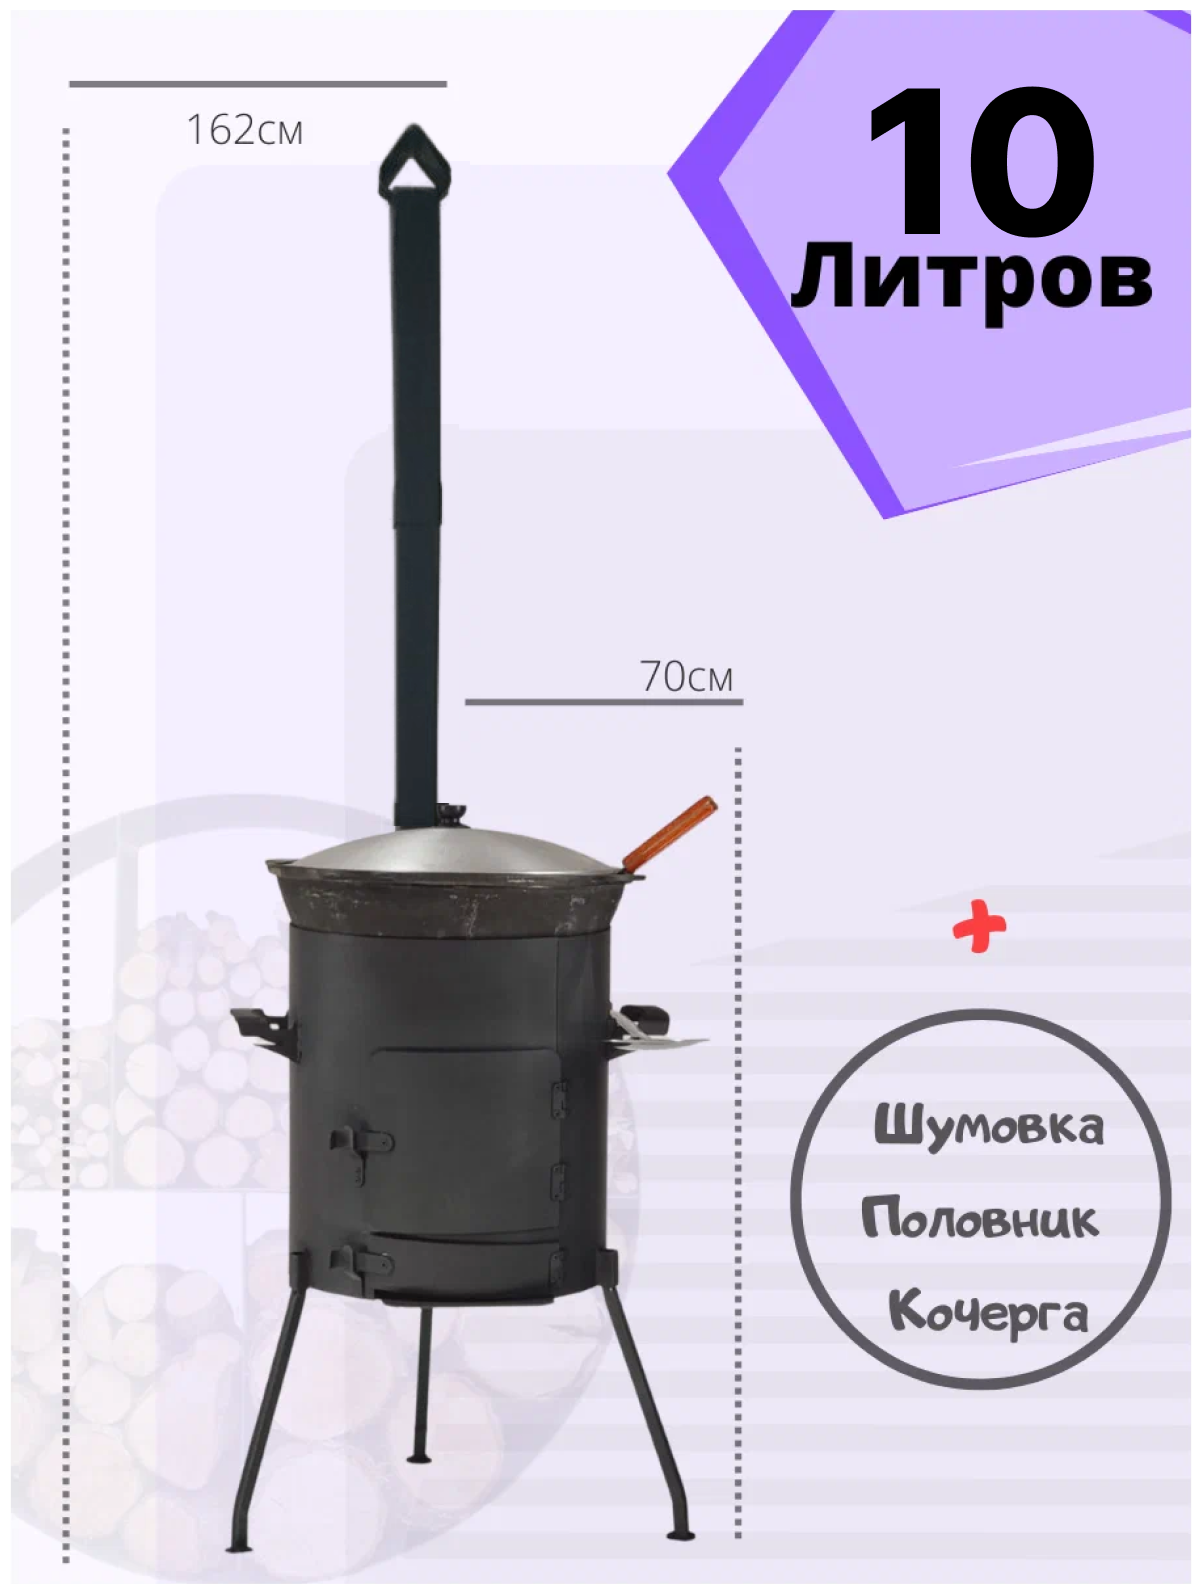 Комплект казан 10 литров + печь с зольником с дверцей и трубой + шумовка + половник Svargan - фотография № 1